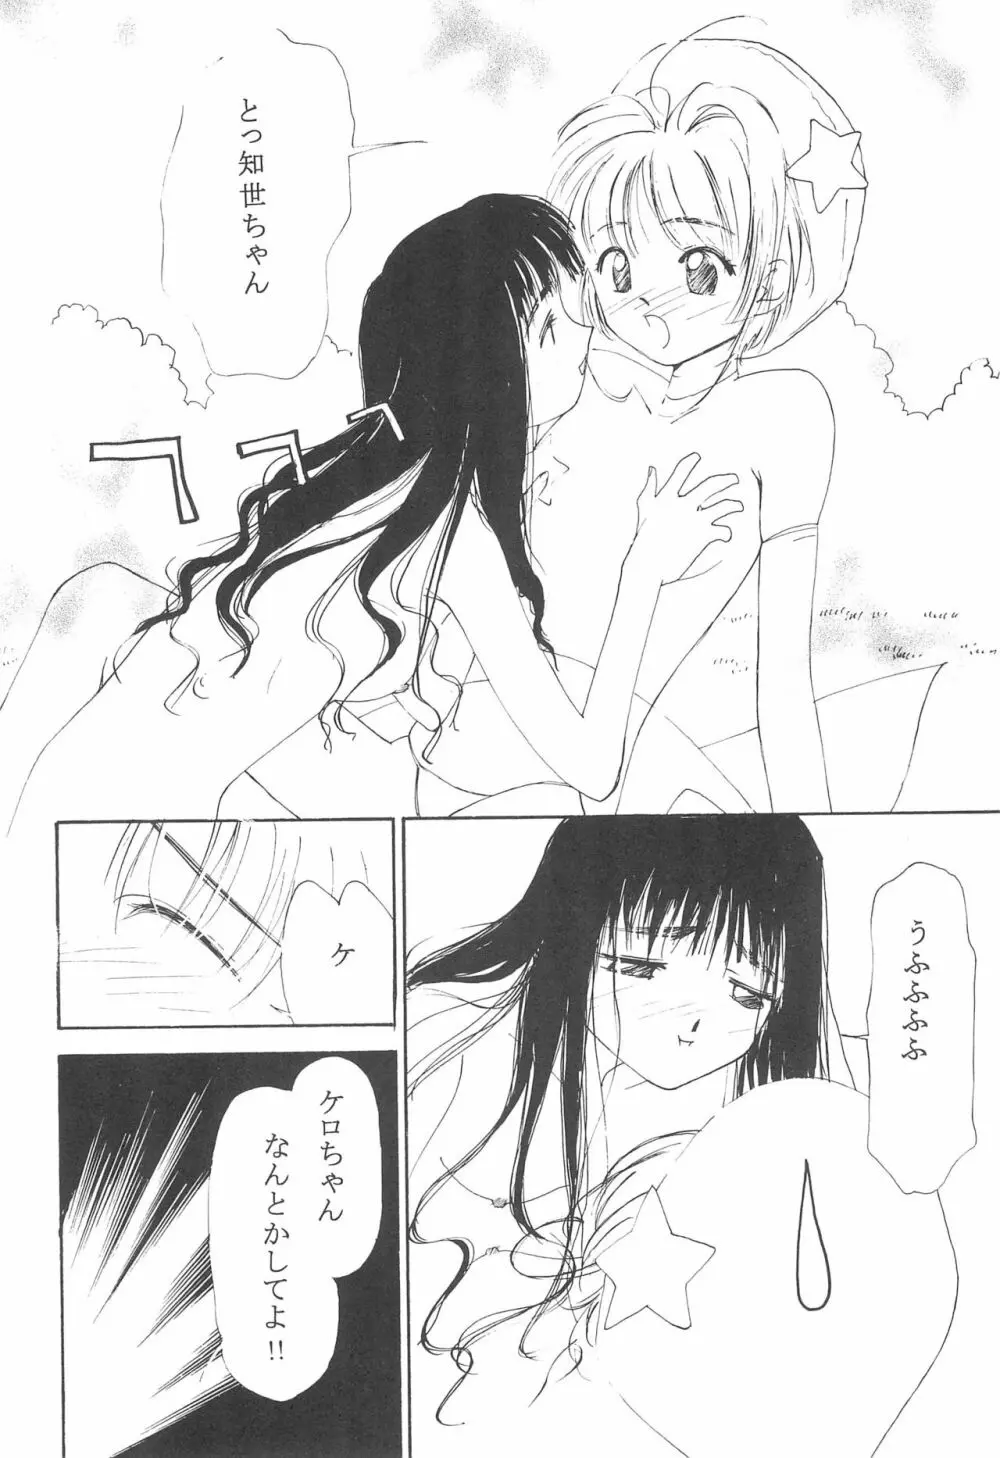 MoMo no Yu 8 12ページ